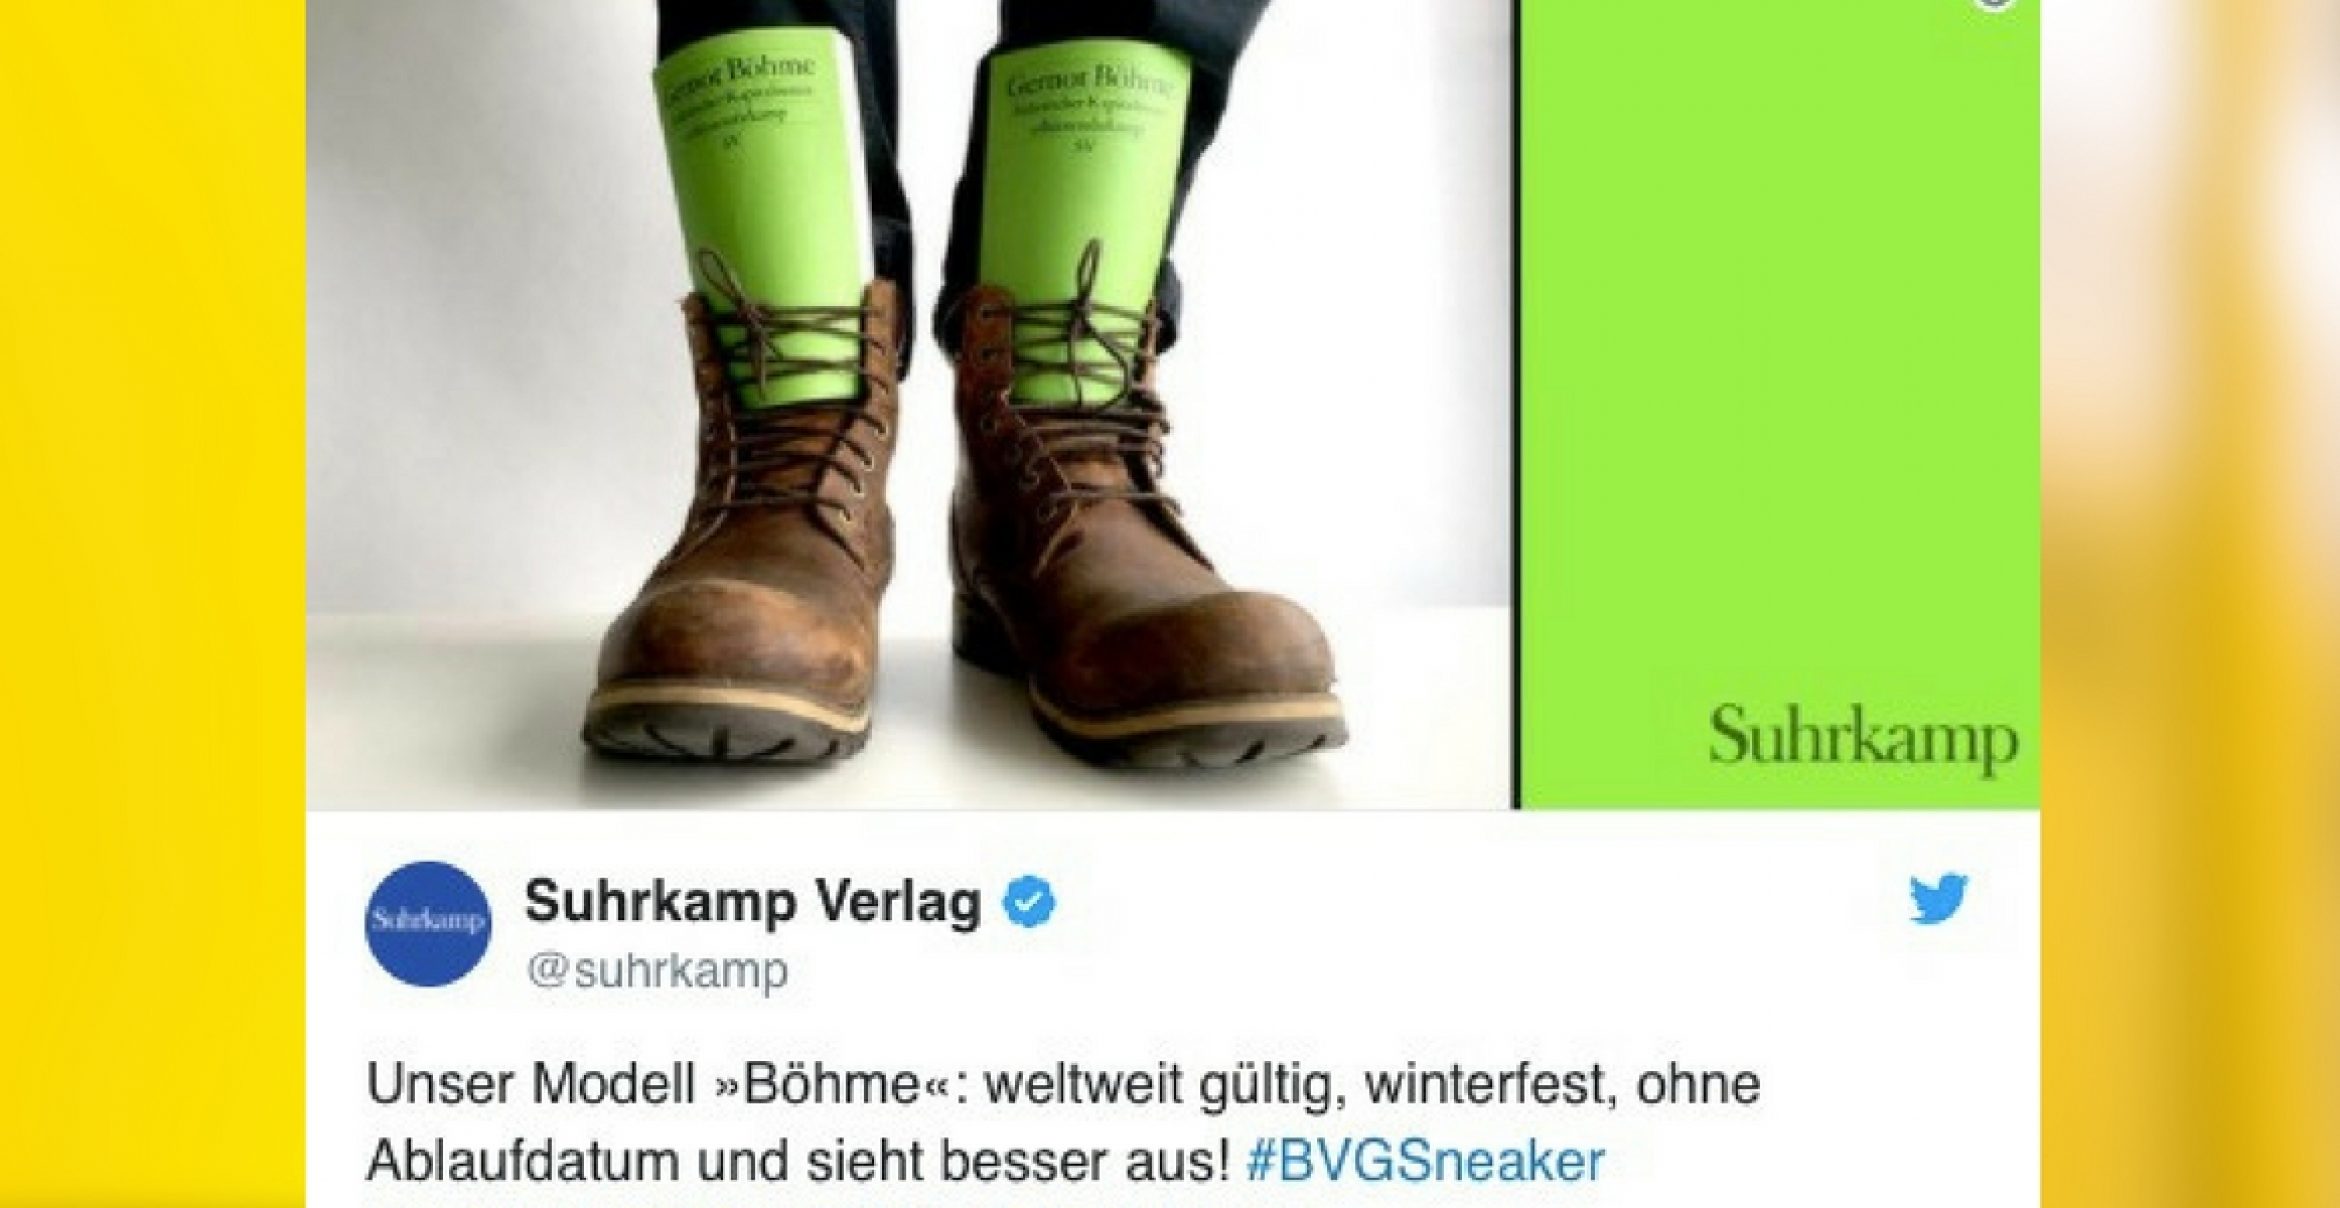 BVG-Sneaker: Wie andere Unternehmen auf den Hype reagieren